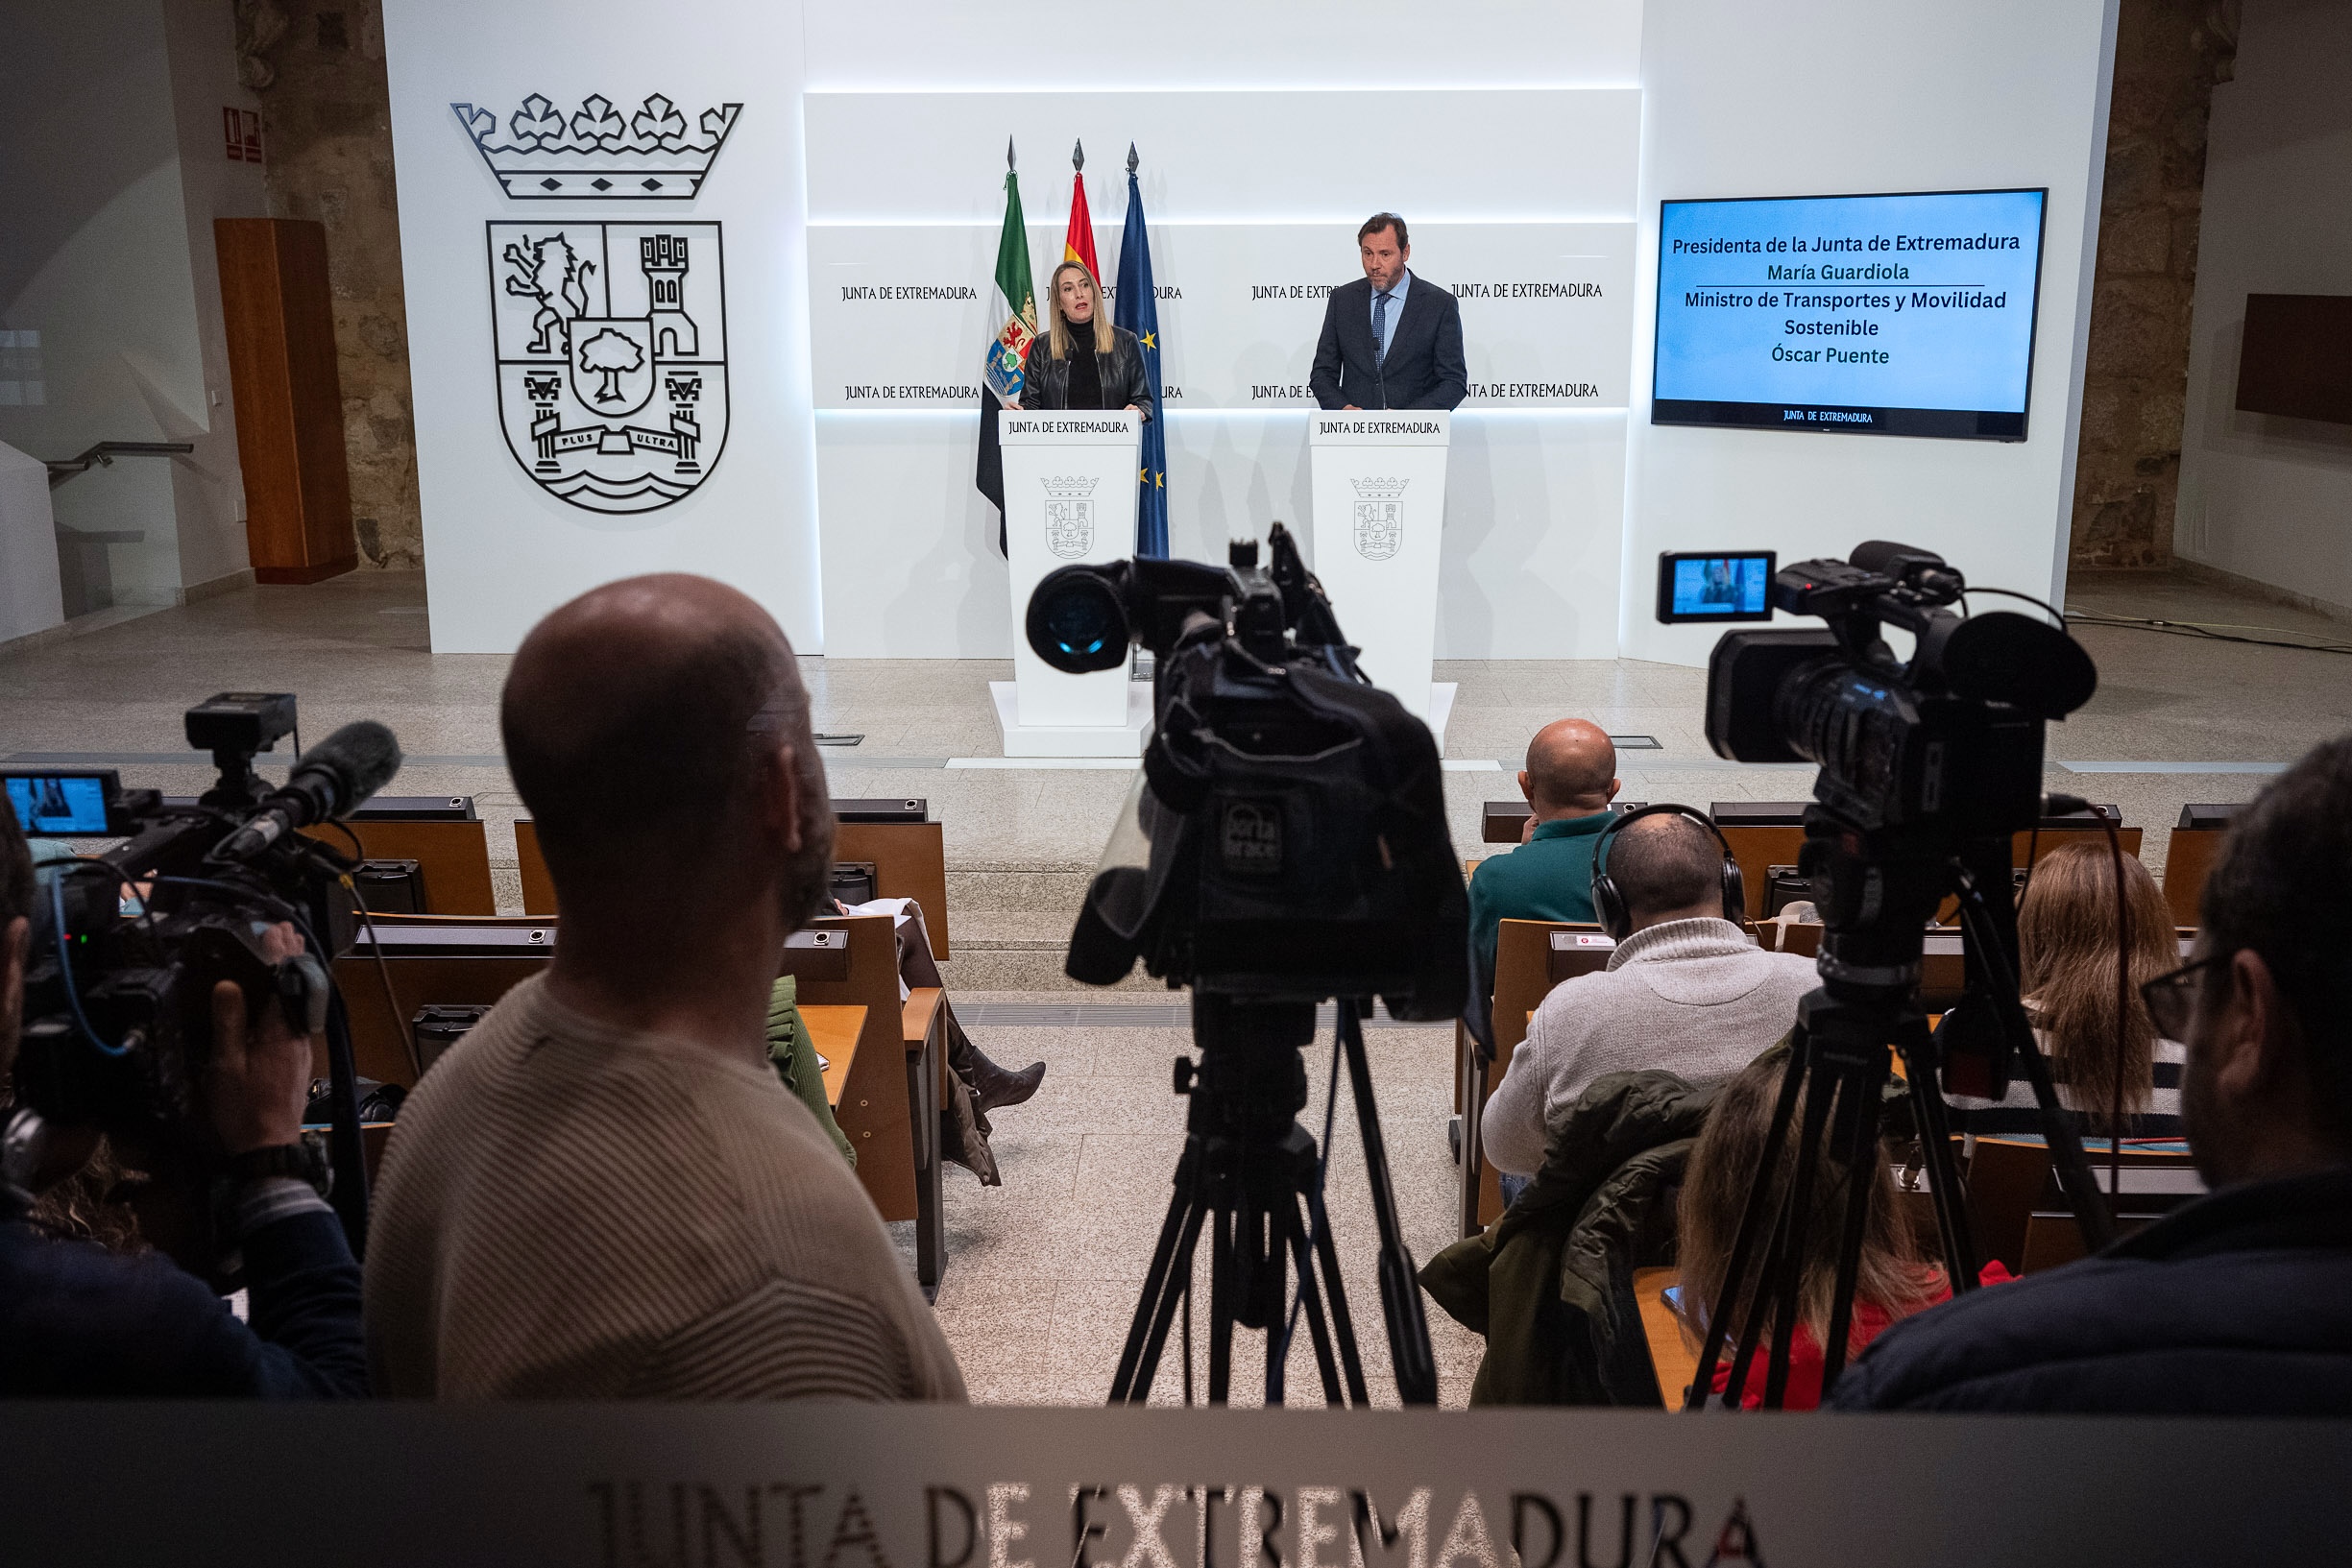 Image 4 of article María Guardiola plantea al ministro Óscar Puente todas las necesidades de Extremadura en materia de transporte e infraestructuras